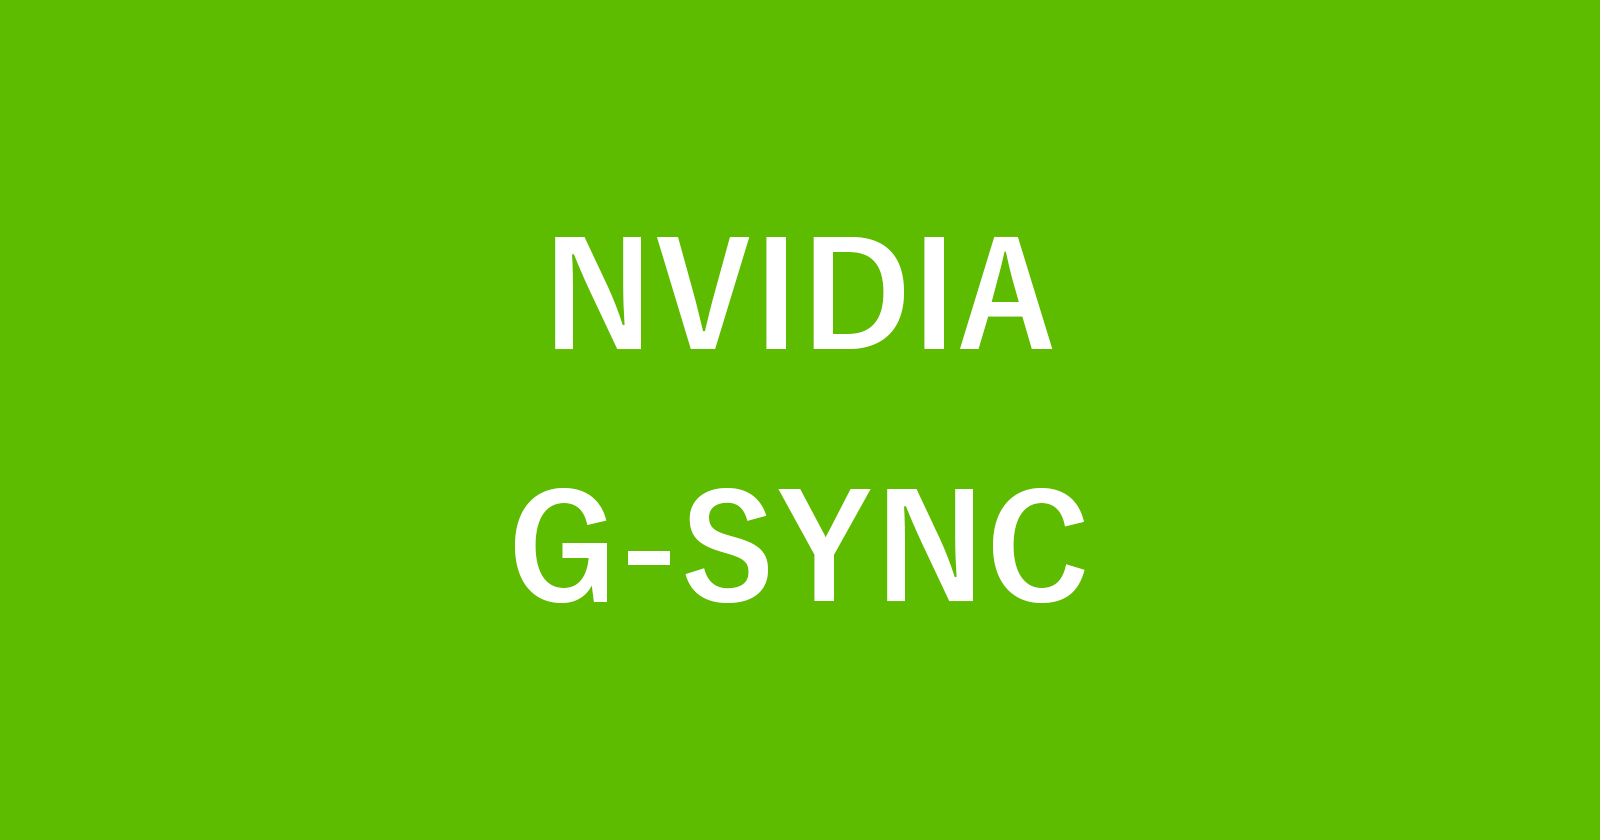 NVIDIA G-SYNC を有効にする方法